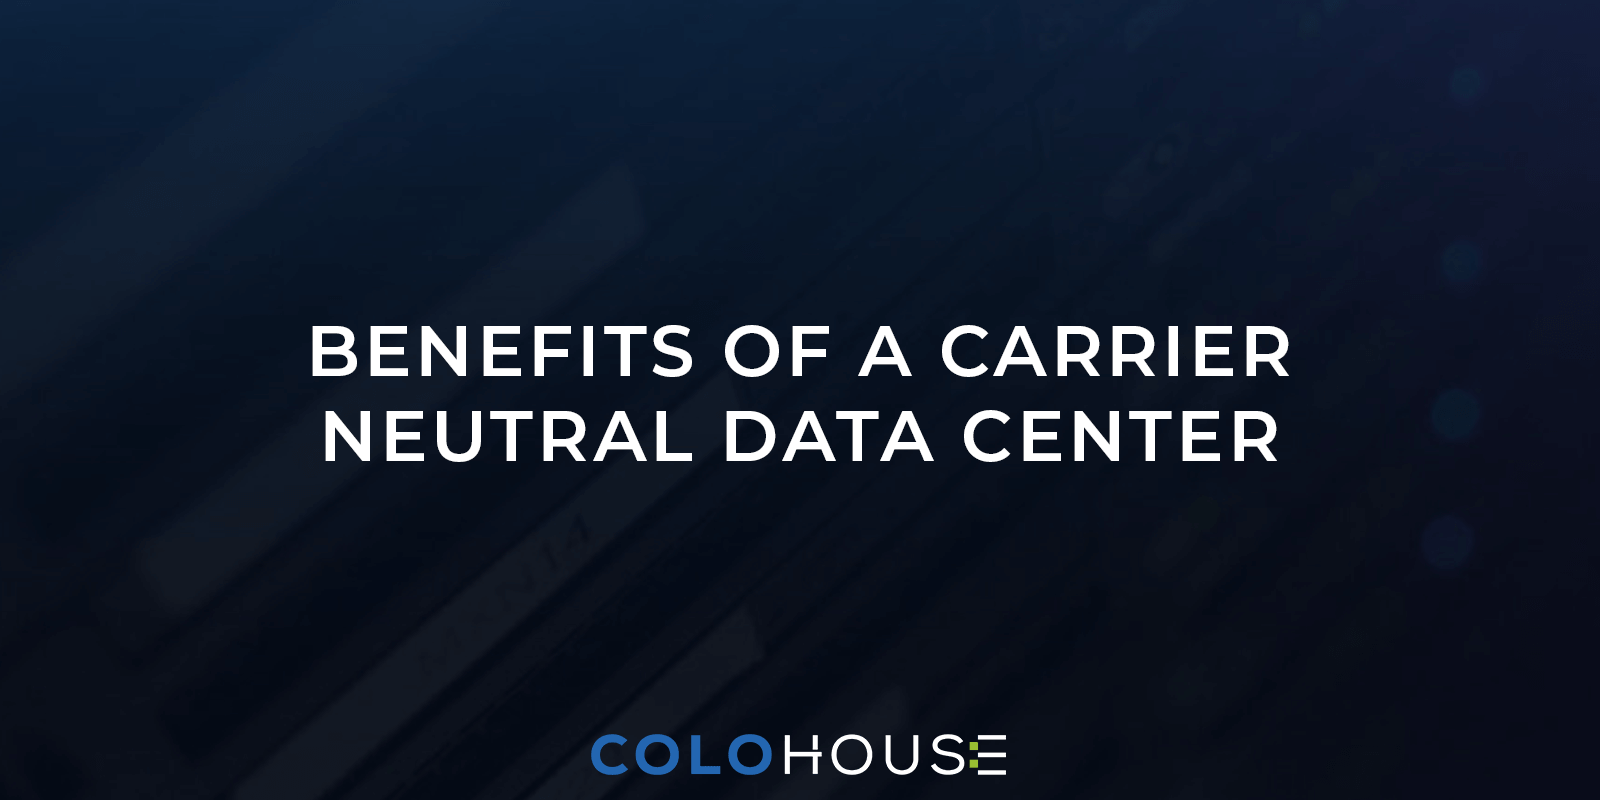 Benefits of a Carrier Neutral Data Center